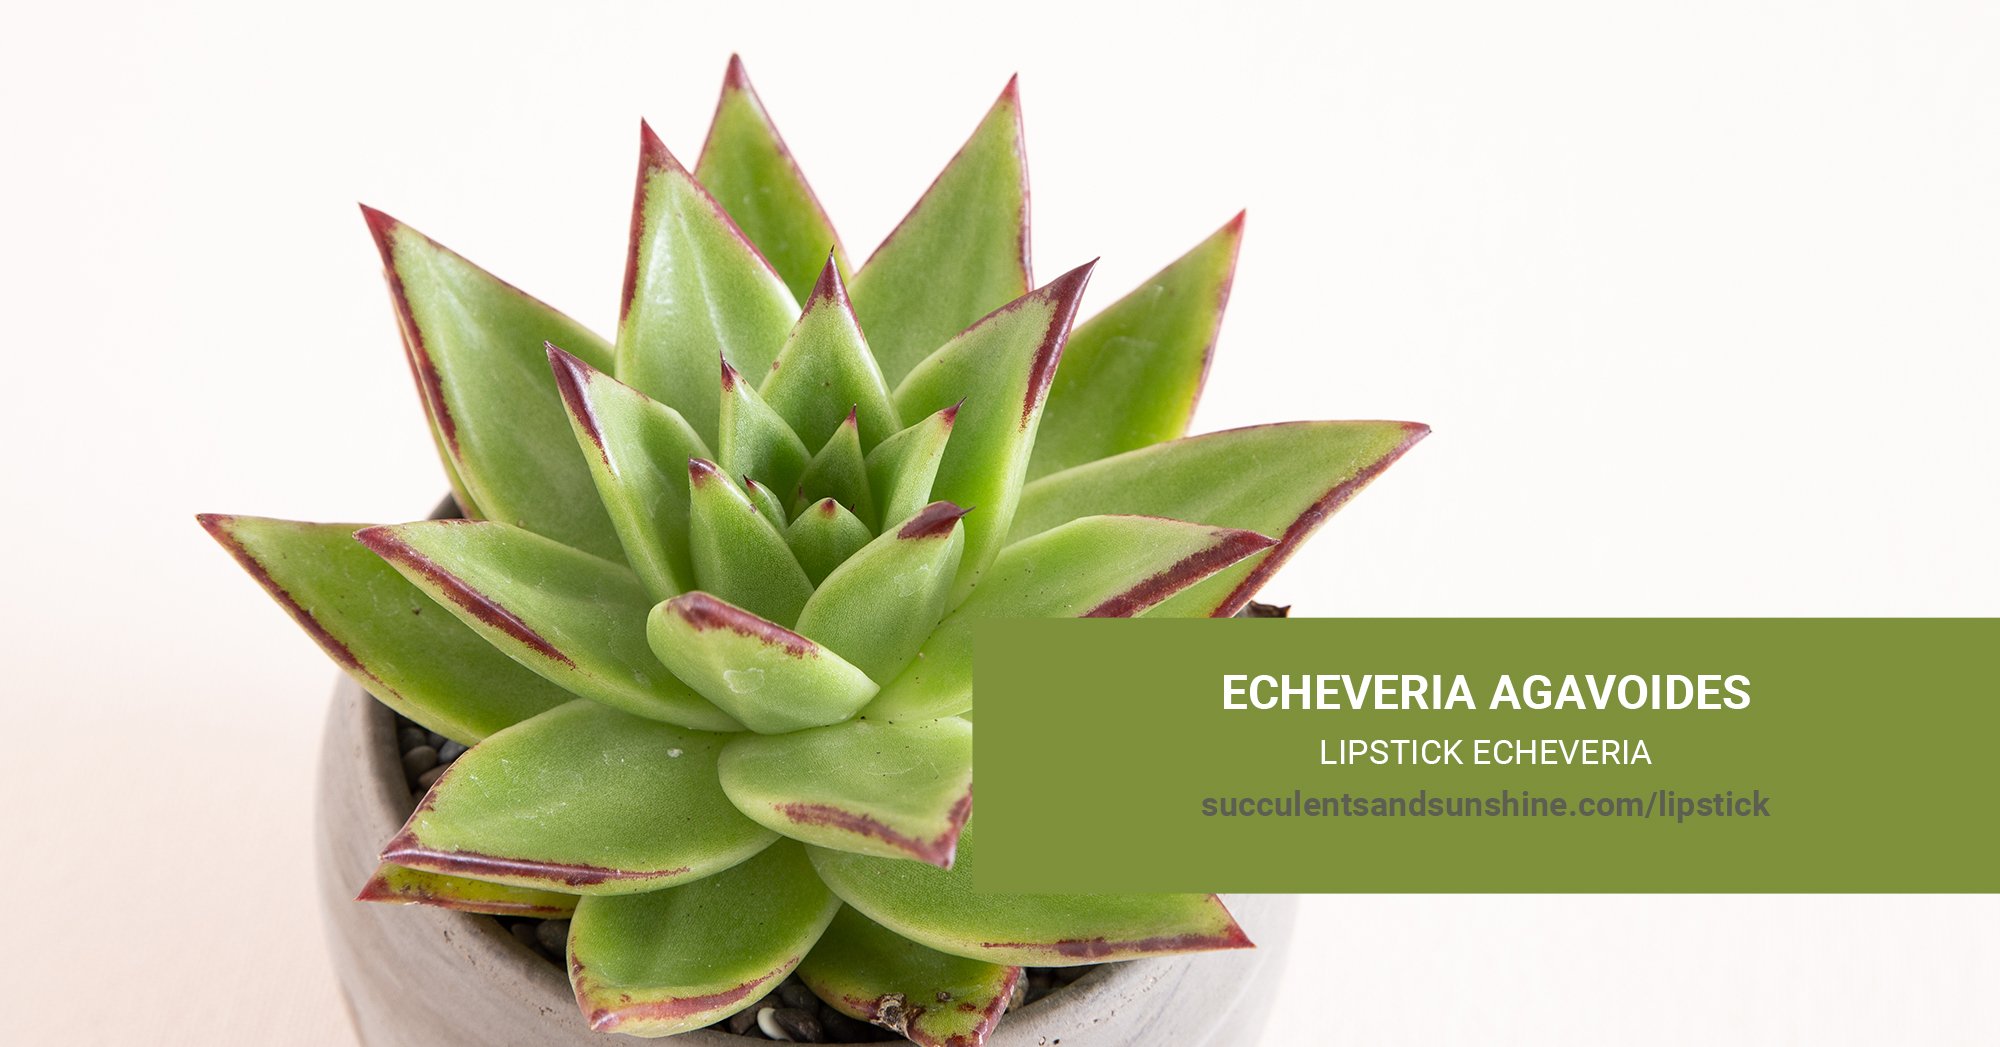 General Care for Echeveria agavoides “Lipstick Echeveria”